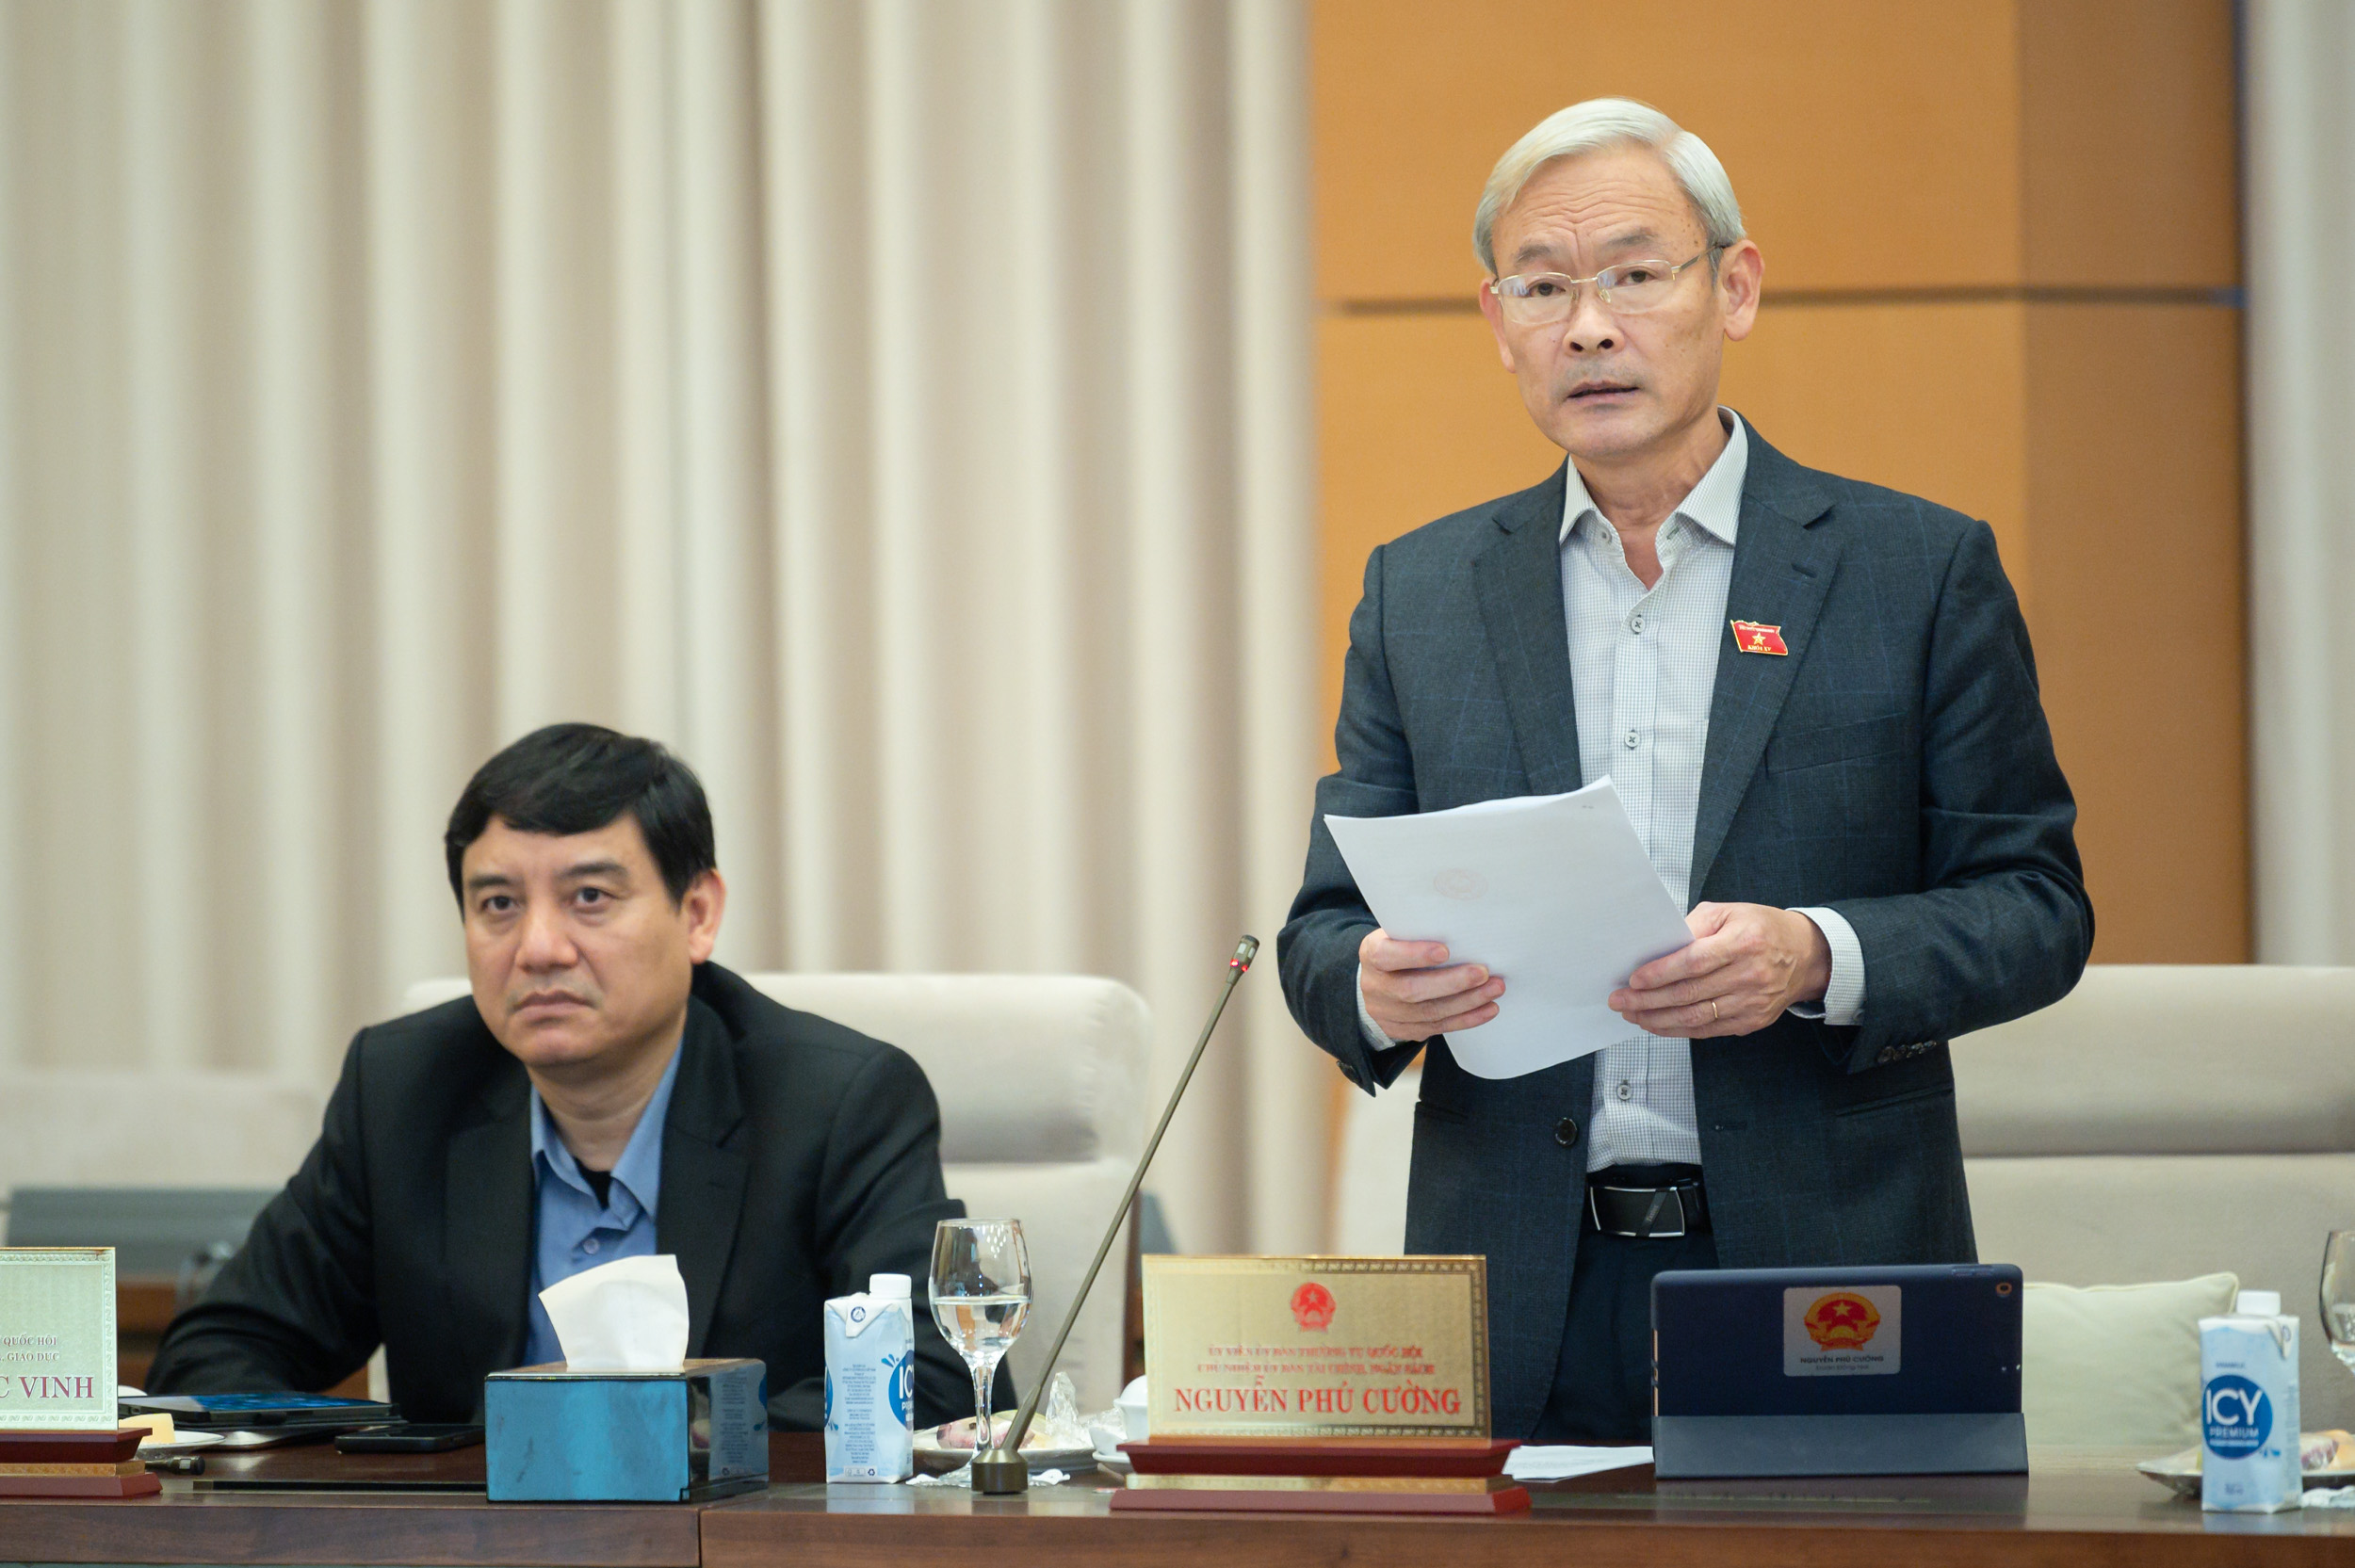 Chủ nhiệm Ủy ban Tài chính – Ngân sách của Quốc hội Nguyễn Phú Cường trình bày báo cáo thẩm tra